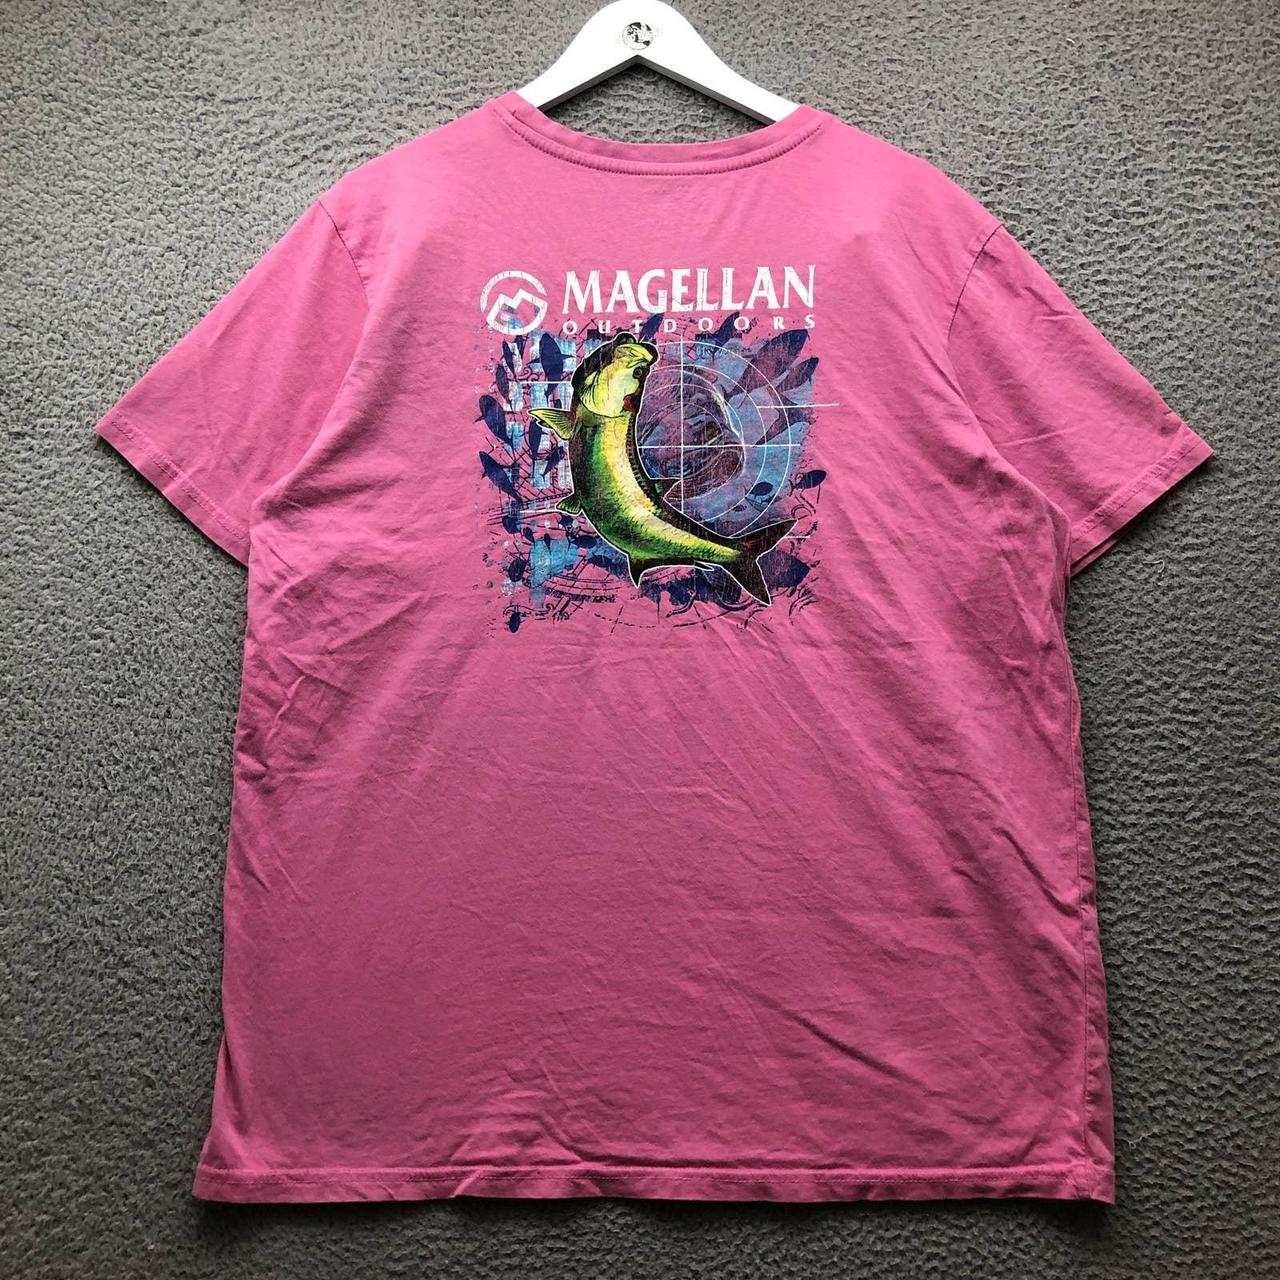 Magellan Outdoor T-Shirt Men's Size XL Short Sleeve - Depop